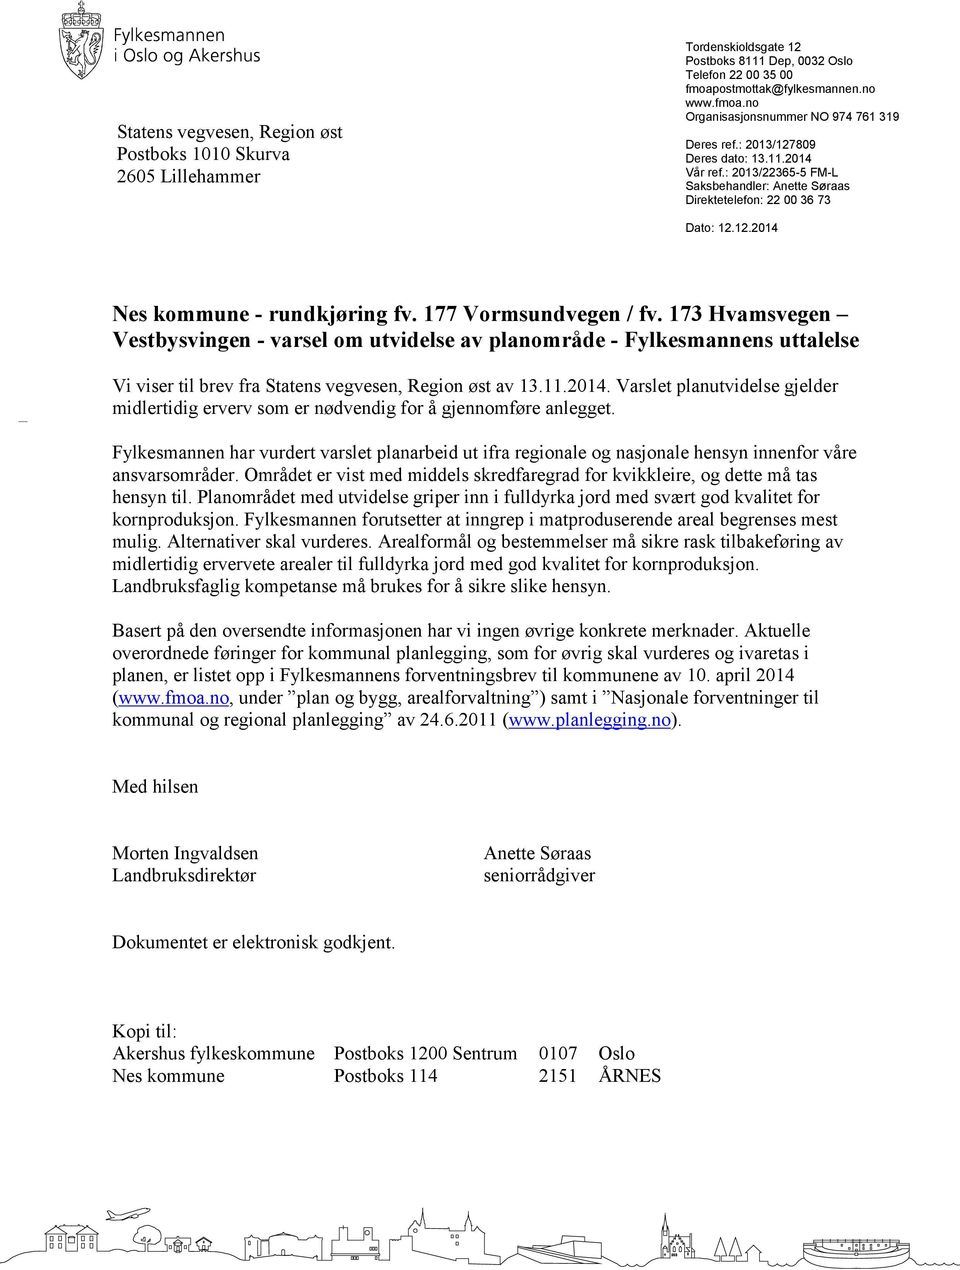 173 Hvamsvegen Vestbysvingen - varsel om utvidelse av planområde - Fylkesmannens uttalelse Vi viser til brev fra Statens vegvesen, Region øst av 13.11.2014.